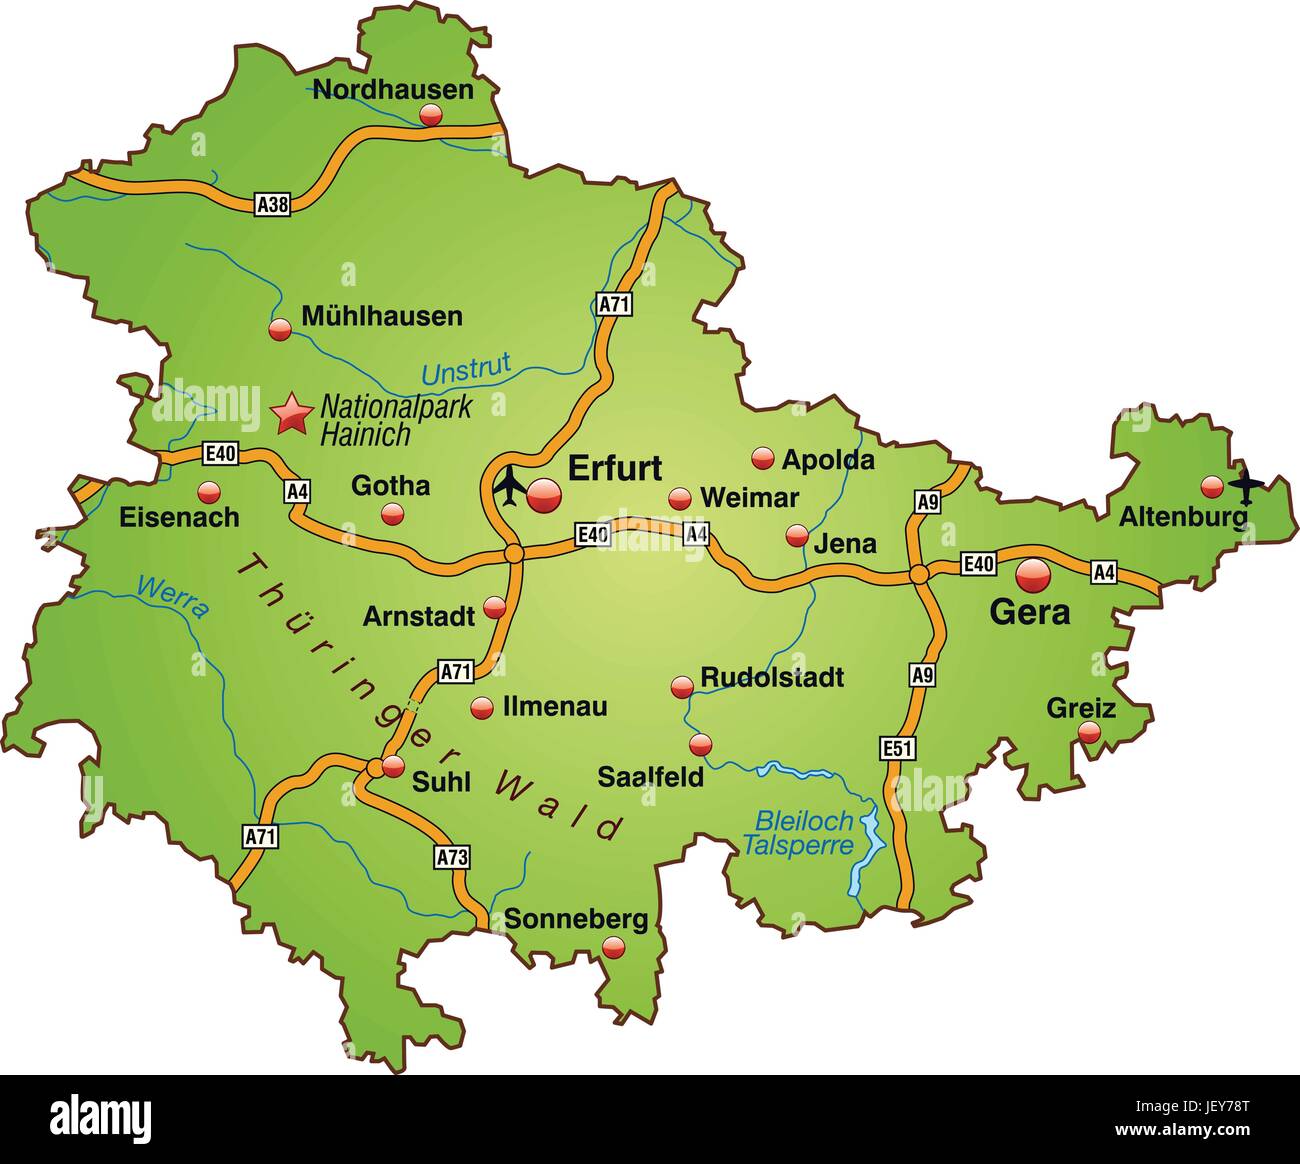 Mappa thueringen Immagine e Vettoriale - Alamy